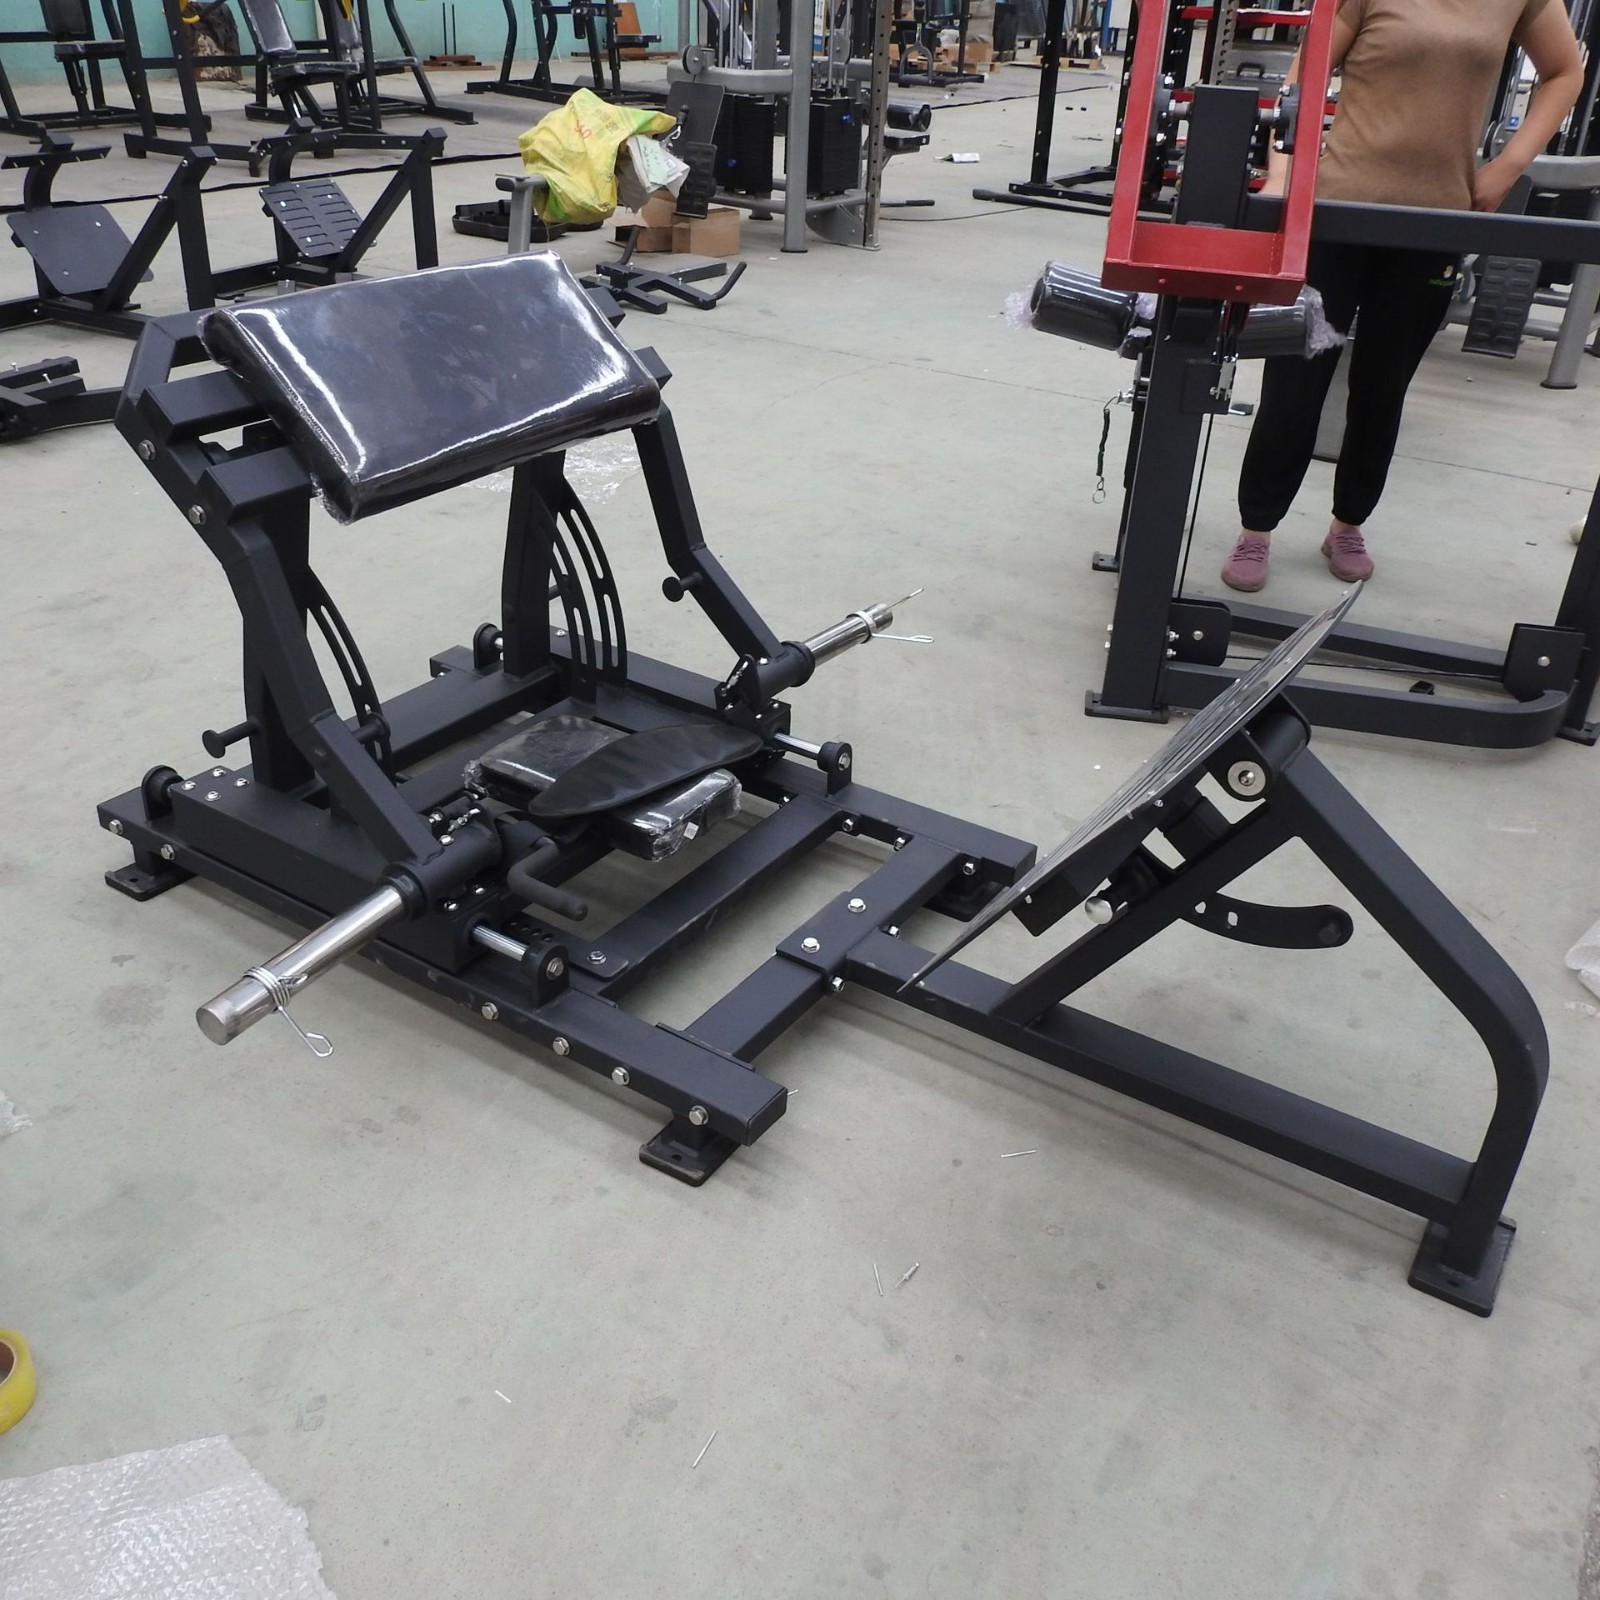 臀桥训练机健身器材商用健身房工作室卧推力量训练器械臀部训练器